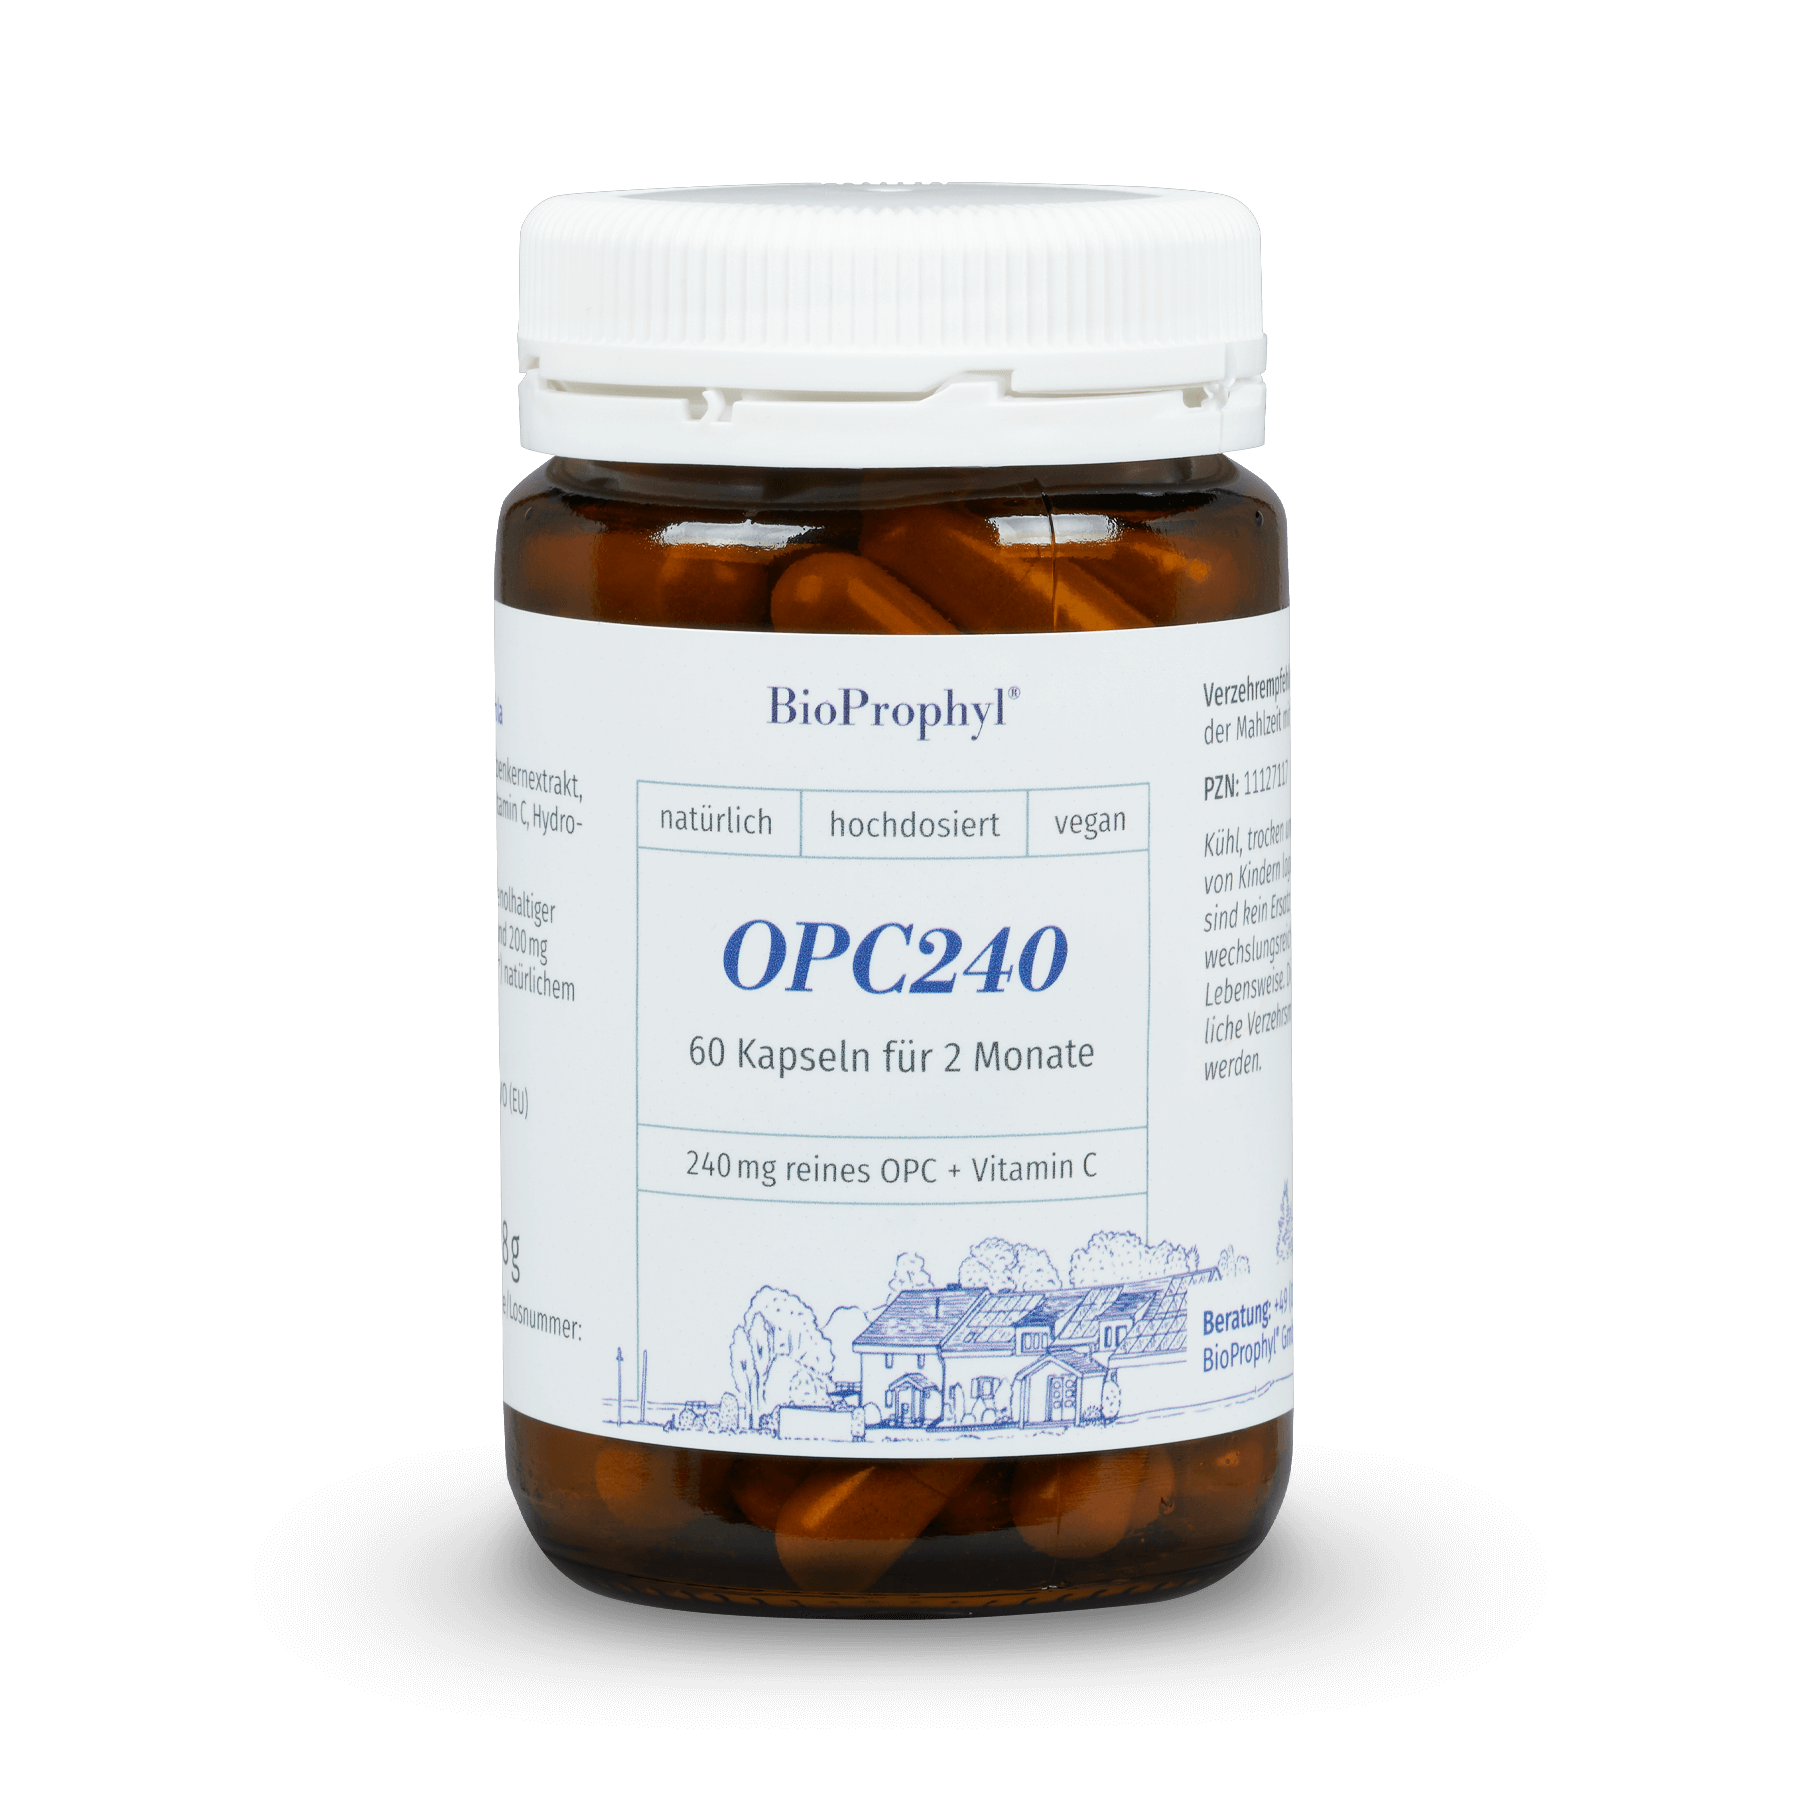 BioProphyl OPC240 plus Acerola 60 vegetarische capsules met elk 240 mg zuivere OPC plus natuurlijke vitamine C